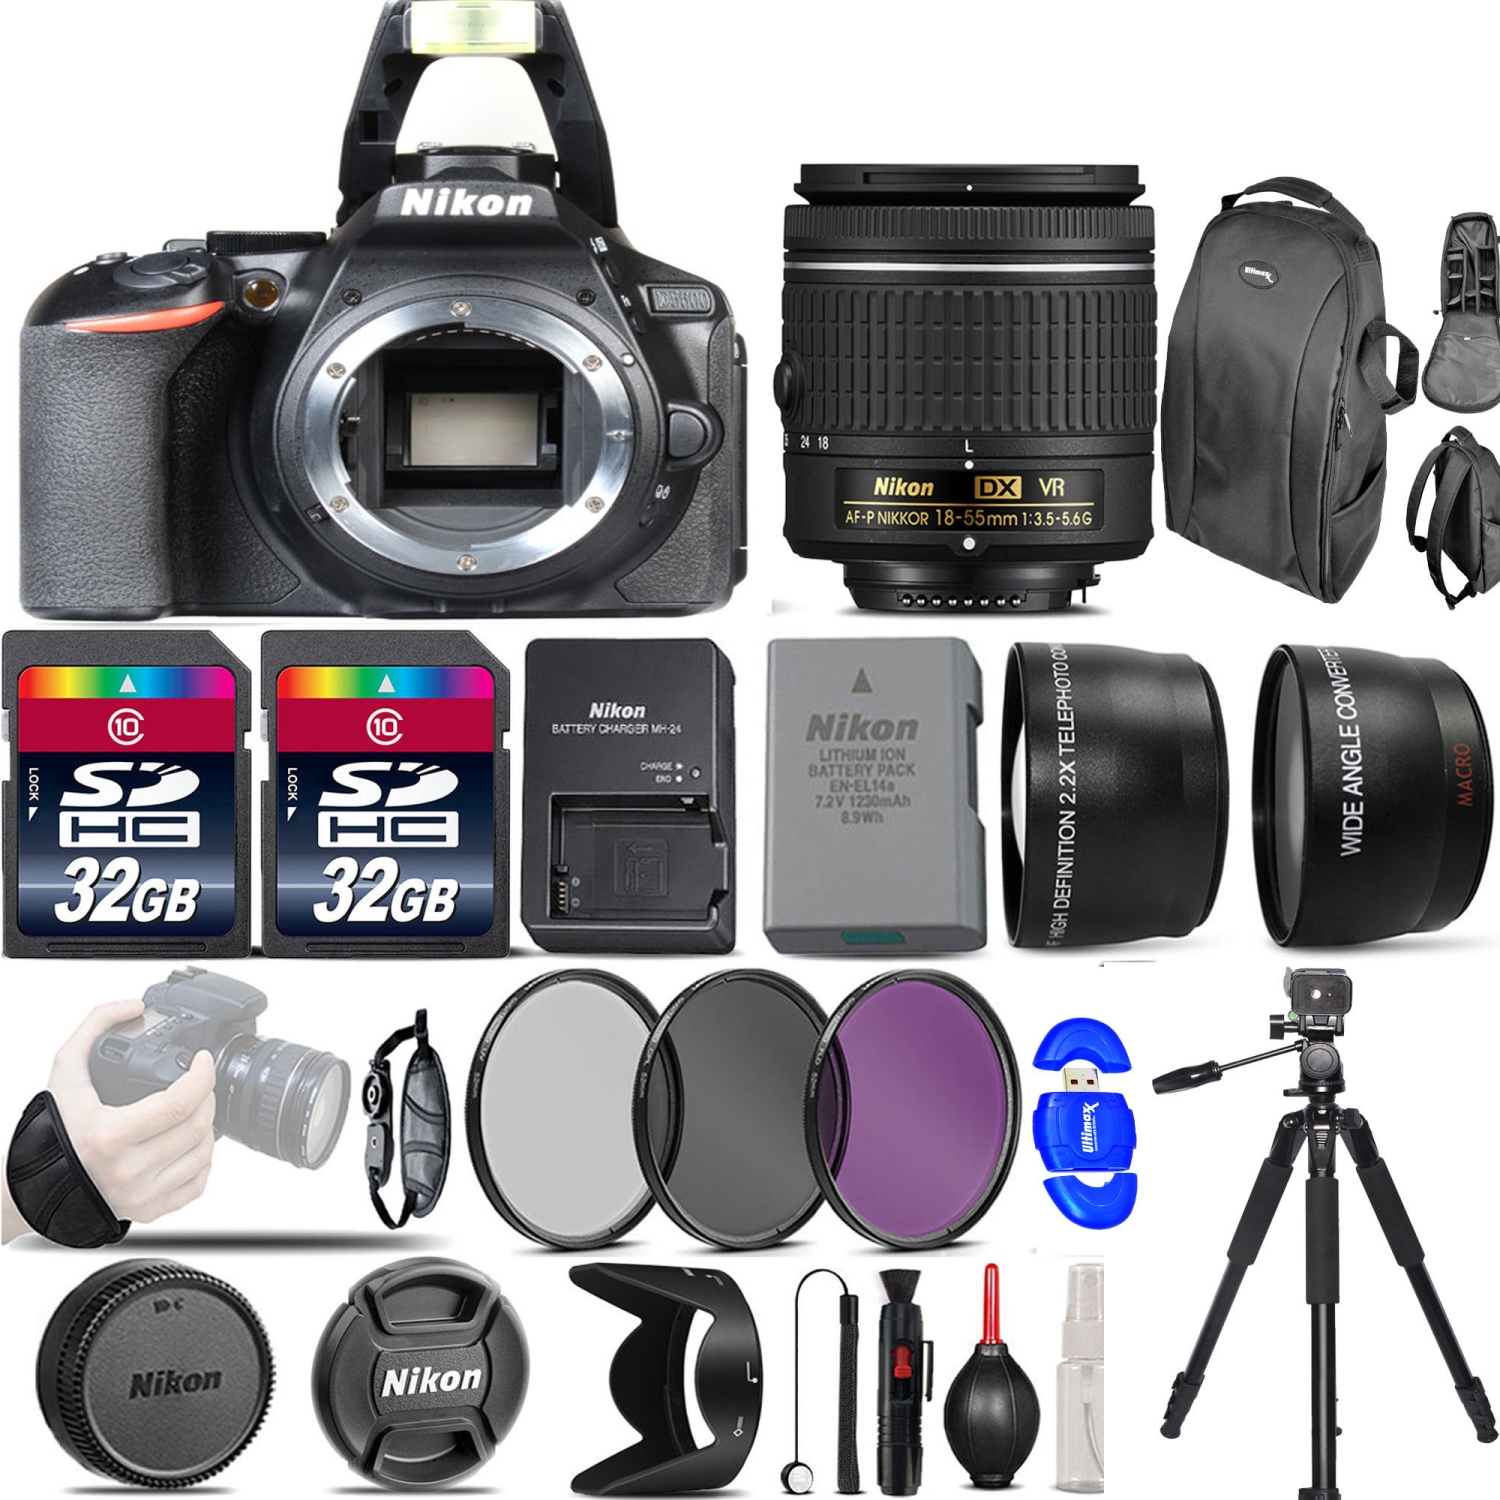 Nikon D5600 Digital SLR Camera +3 Lens 18-55mm VR + 64GB -Great Saving Full Kit - US Version w/ Seller Warranty